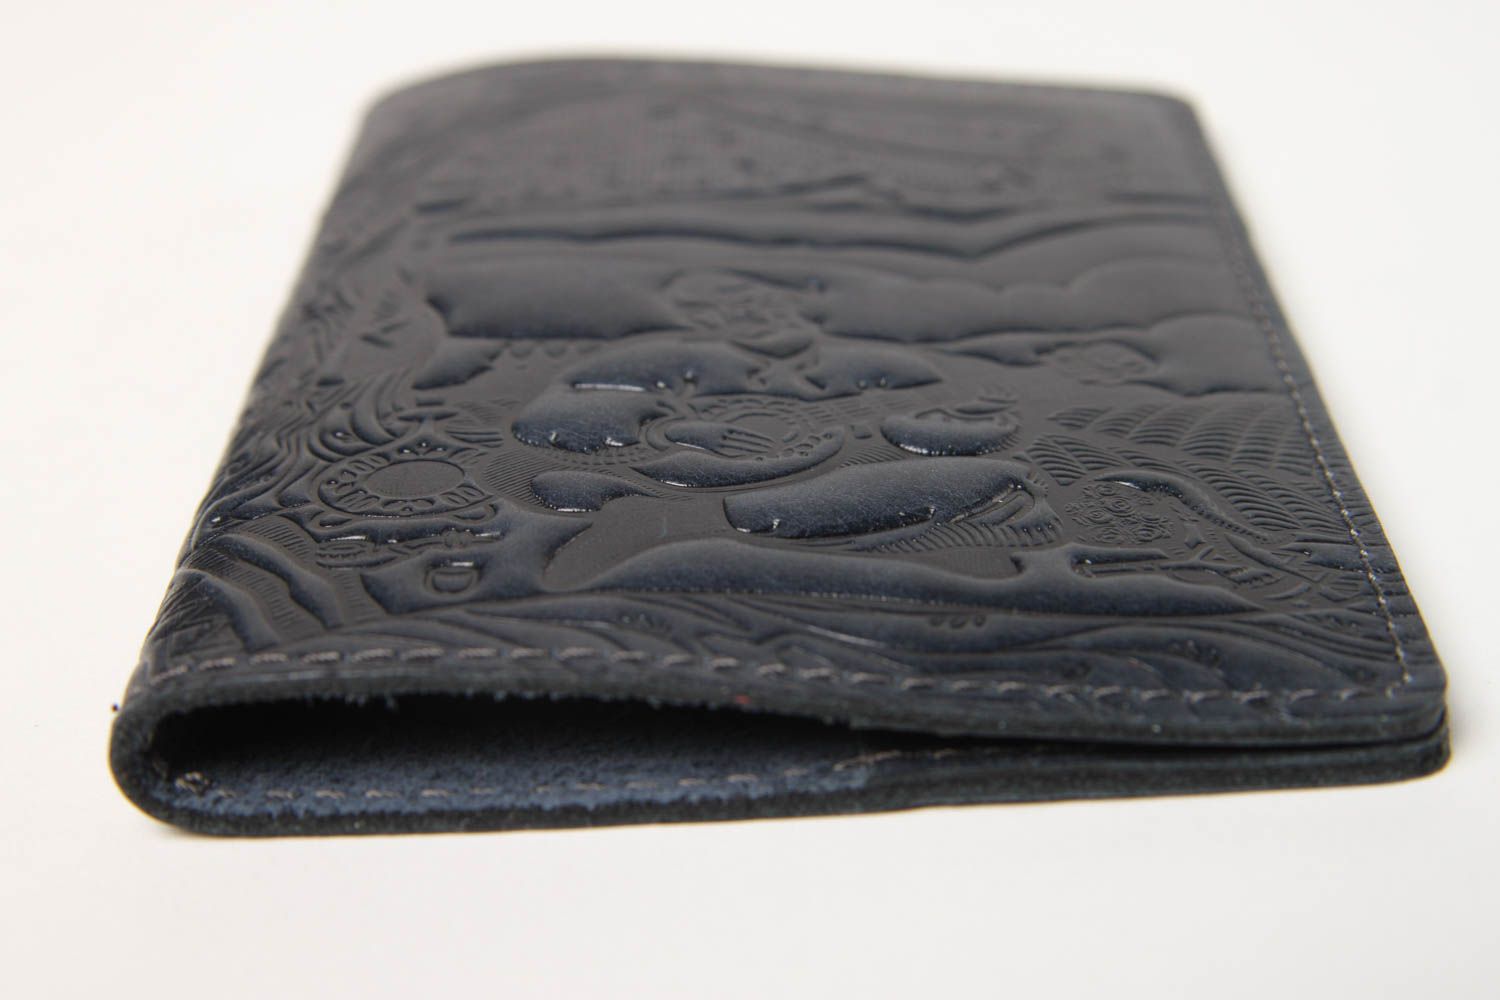 Оригинальный подарок хенд мейд кожаный аксессуар черна обложка на паспорт фото 4